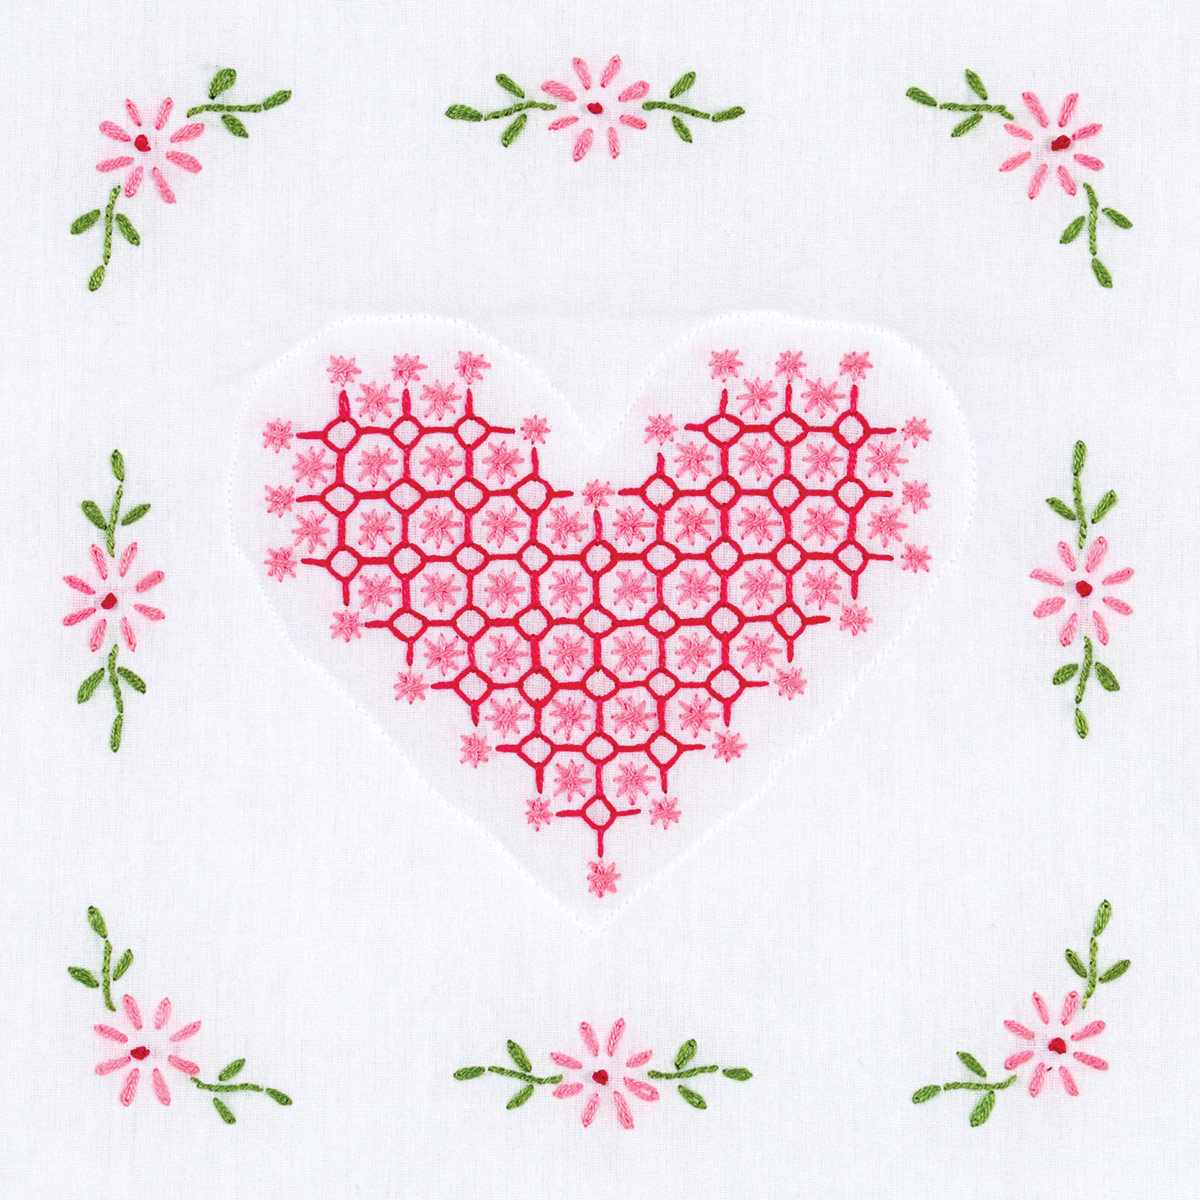 Chicken Scratch Embroidery Patterns Free Chicken Scratch Heart 9 Quilt Blocks